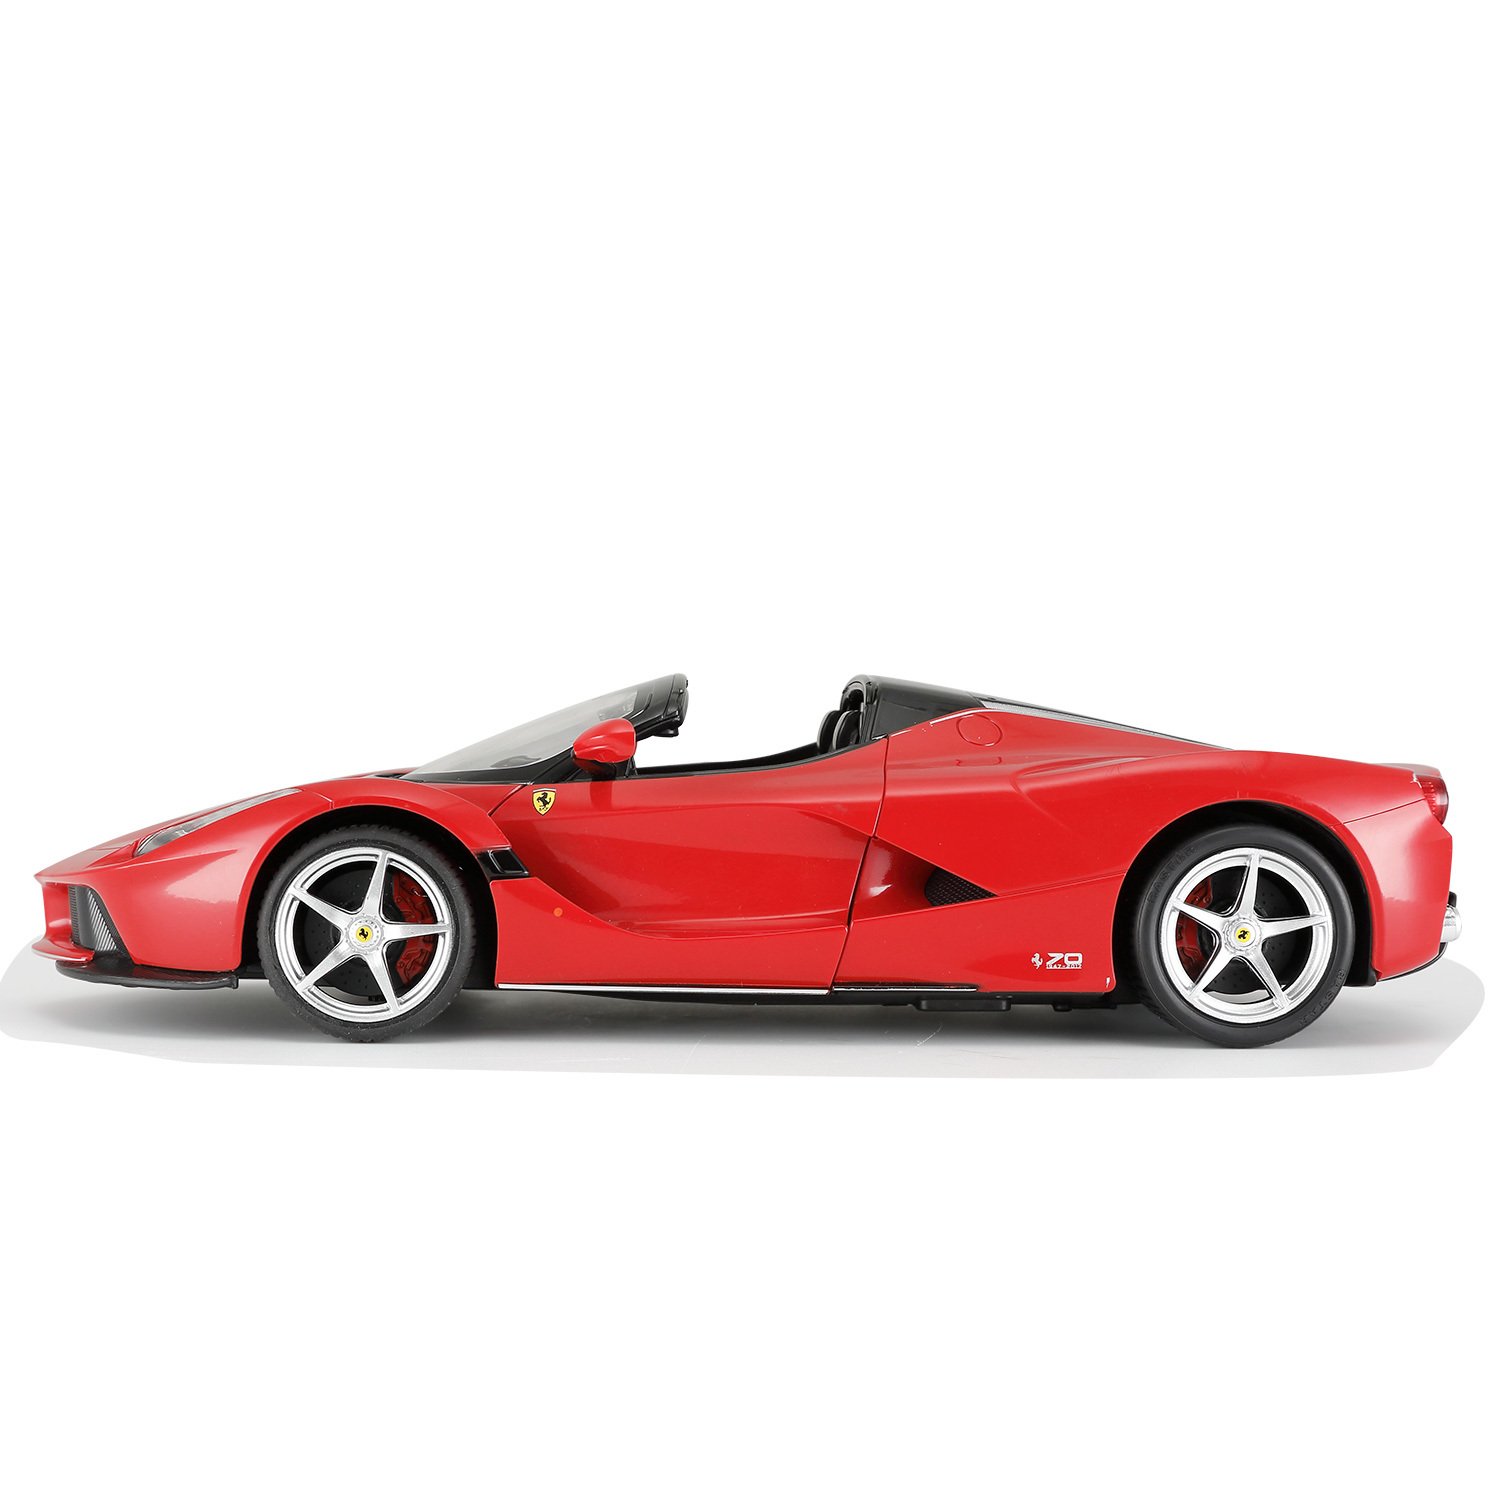 Машина Rastar радиоуправляемая 1:14 Ferrari Aperta Красная 75800